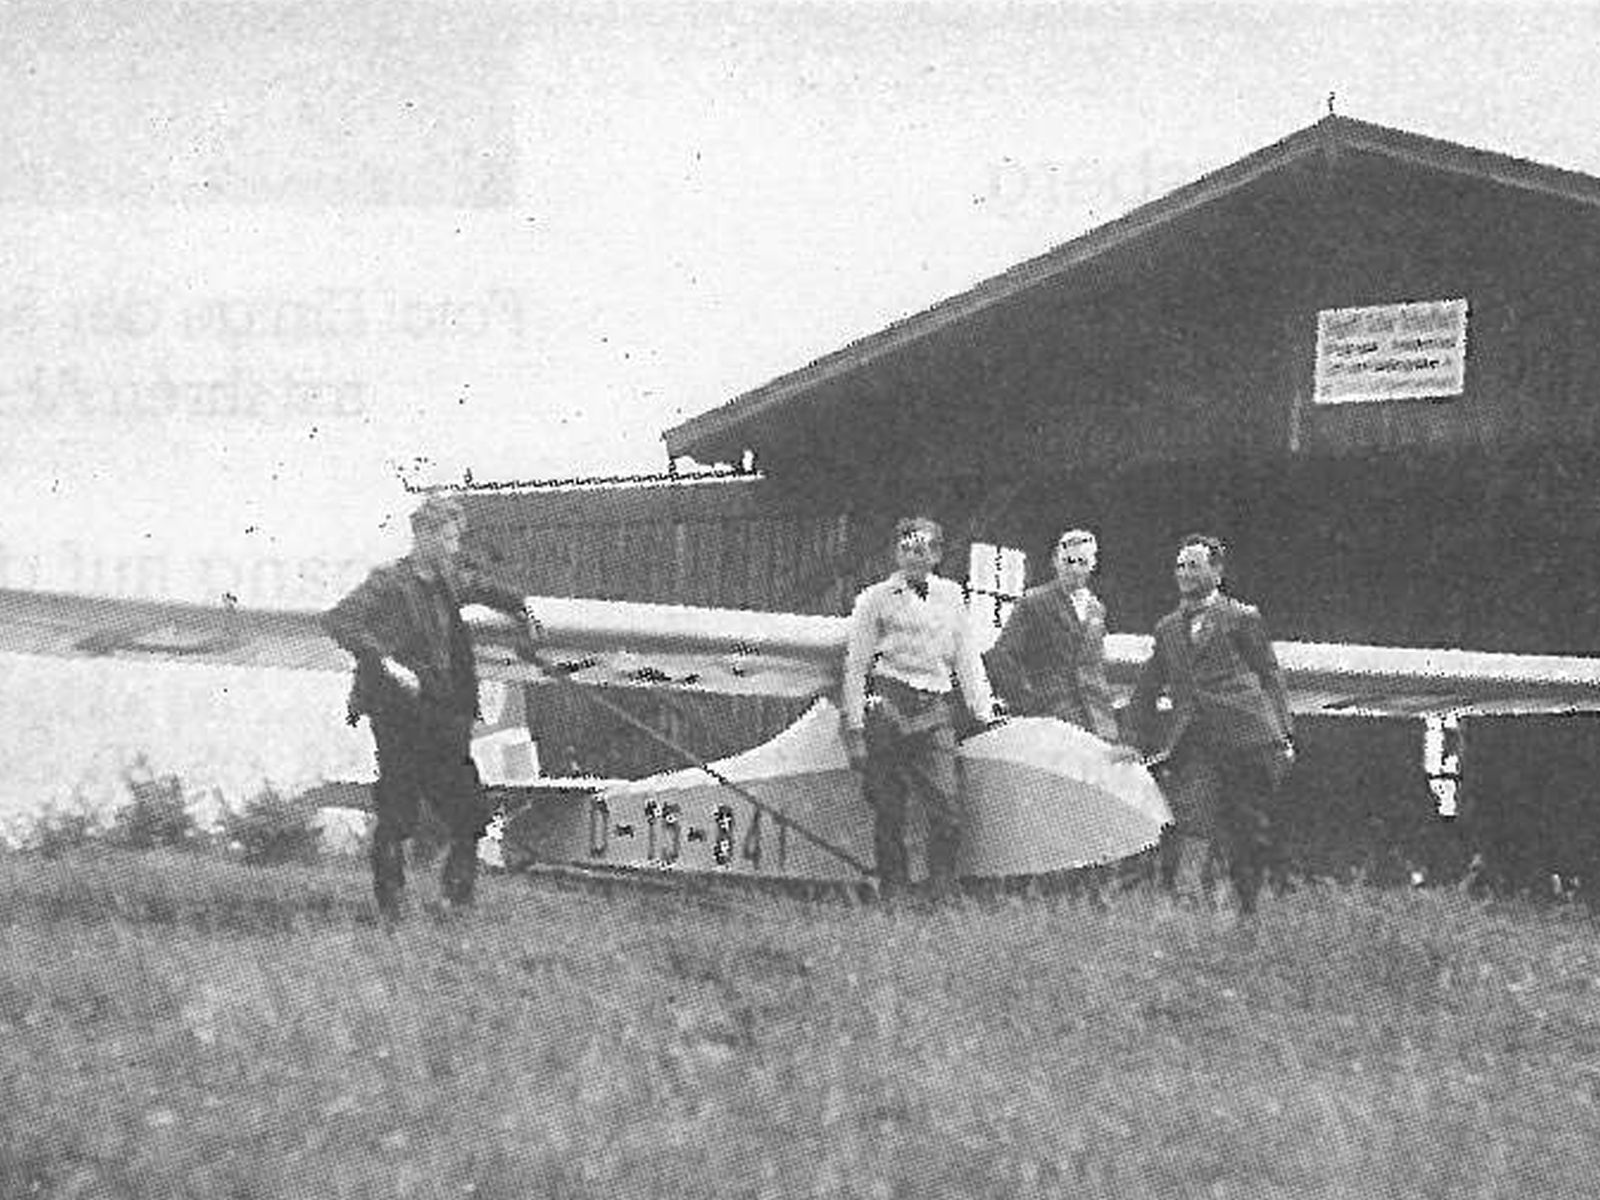  Schopflocher Skizzen mit dem Leistungsflugzeug vor der Halle am Rödelsberg - Bild wird mit einem klick vergrößert 